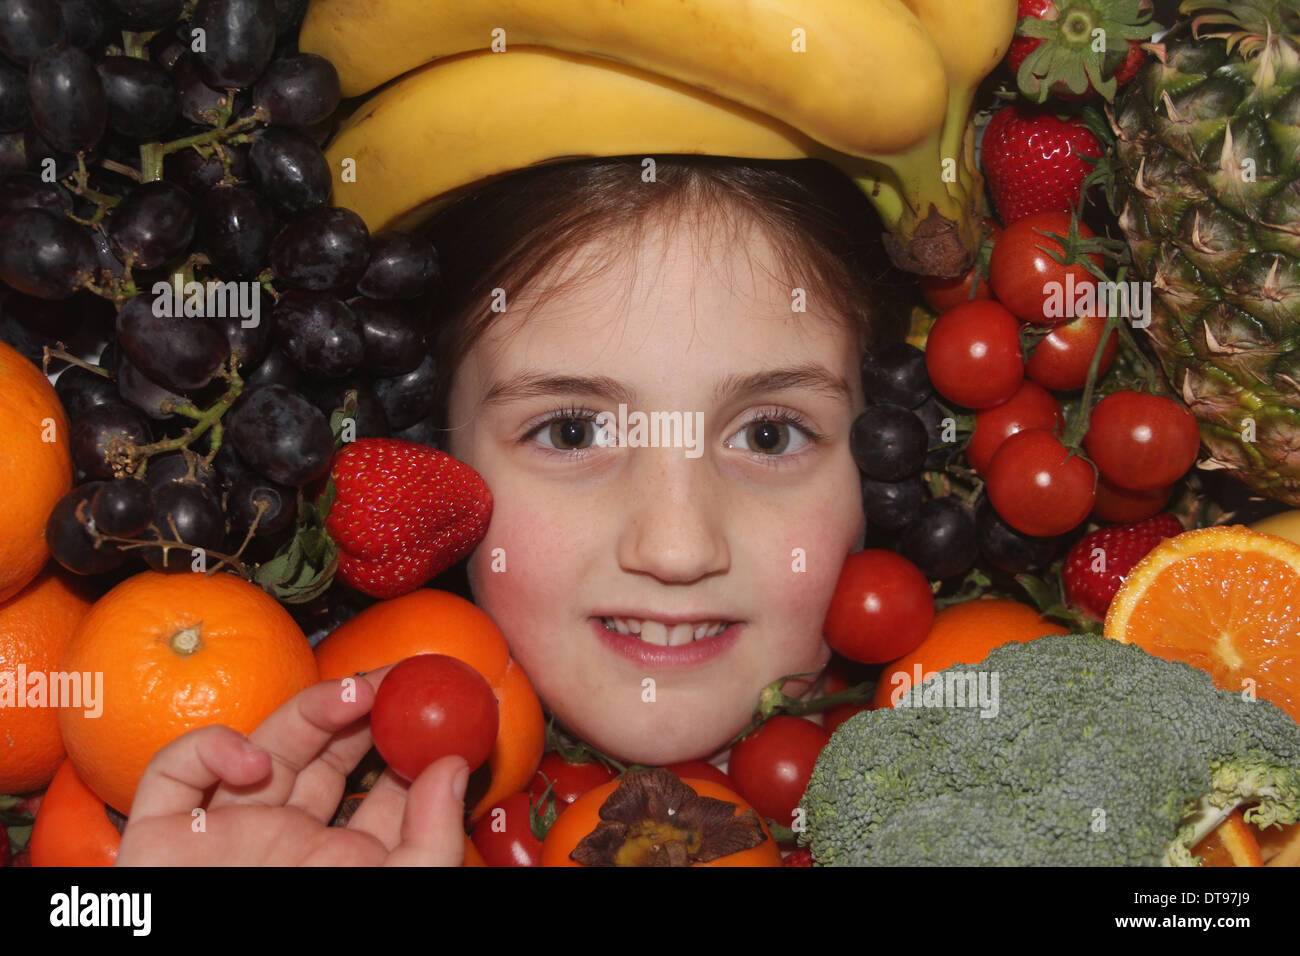 Los jóvenes caucásicos cara de la niña rodeada de frutales y hortalizas sosteniendo un tomate cherry, cinco al día, Inglaterra, Reino Unido. Foto de stock